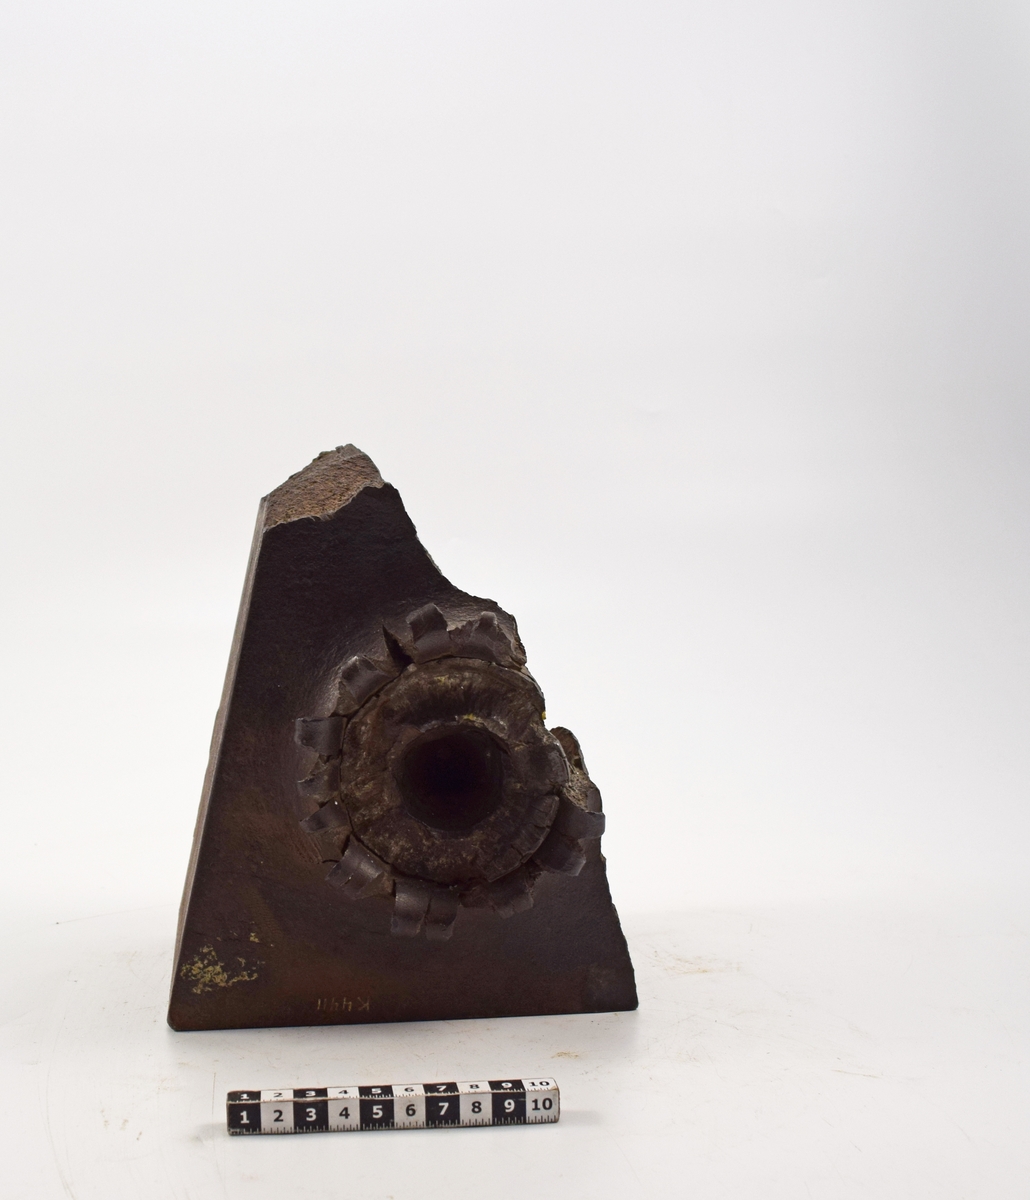 Plåt av stål, 12 cm, triangelformad. Plåten har tillhört en plåt använd  vid provskjutning, varvid spetsen av projektilen trängt in till ett djup av 70mm, där den blivit avskuren och kvarsittande.